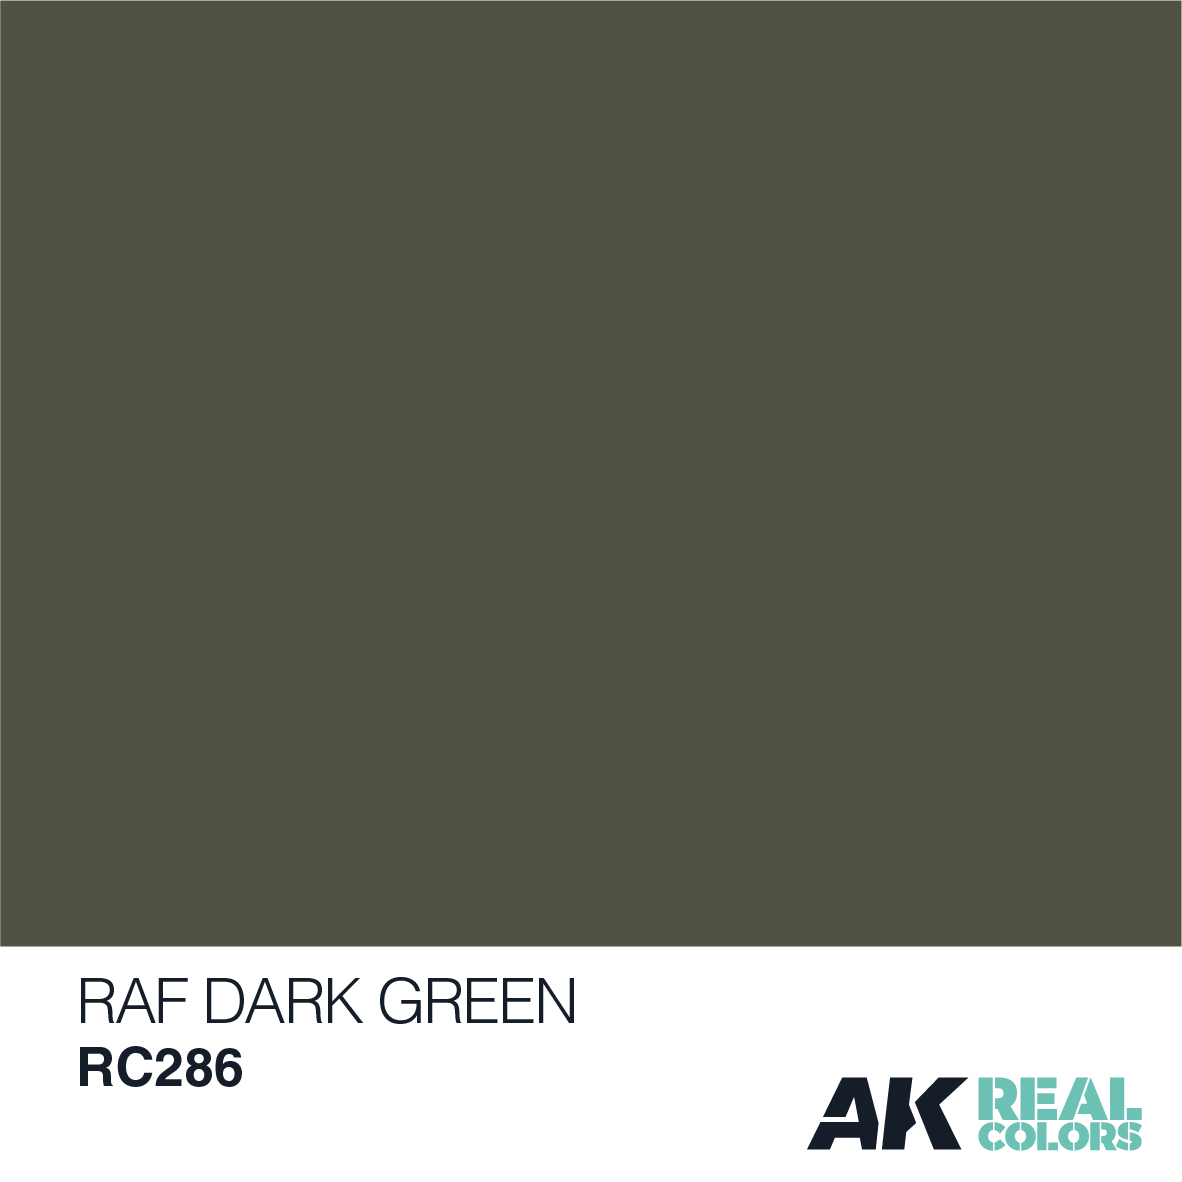 RAF Dark Green